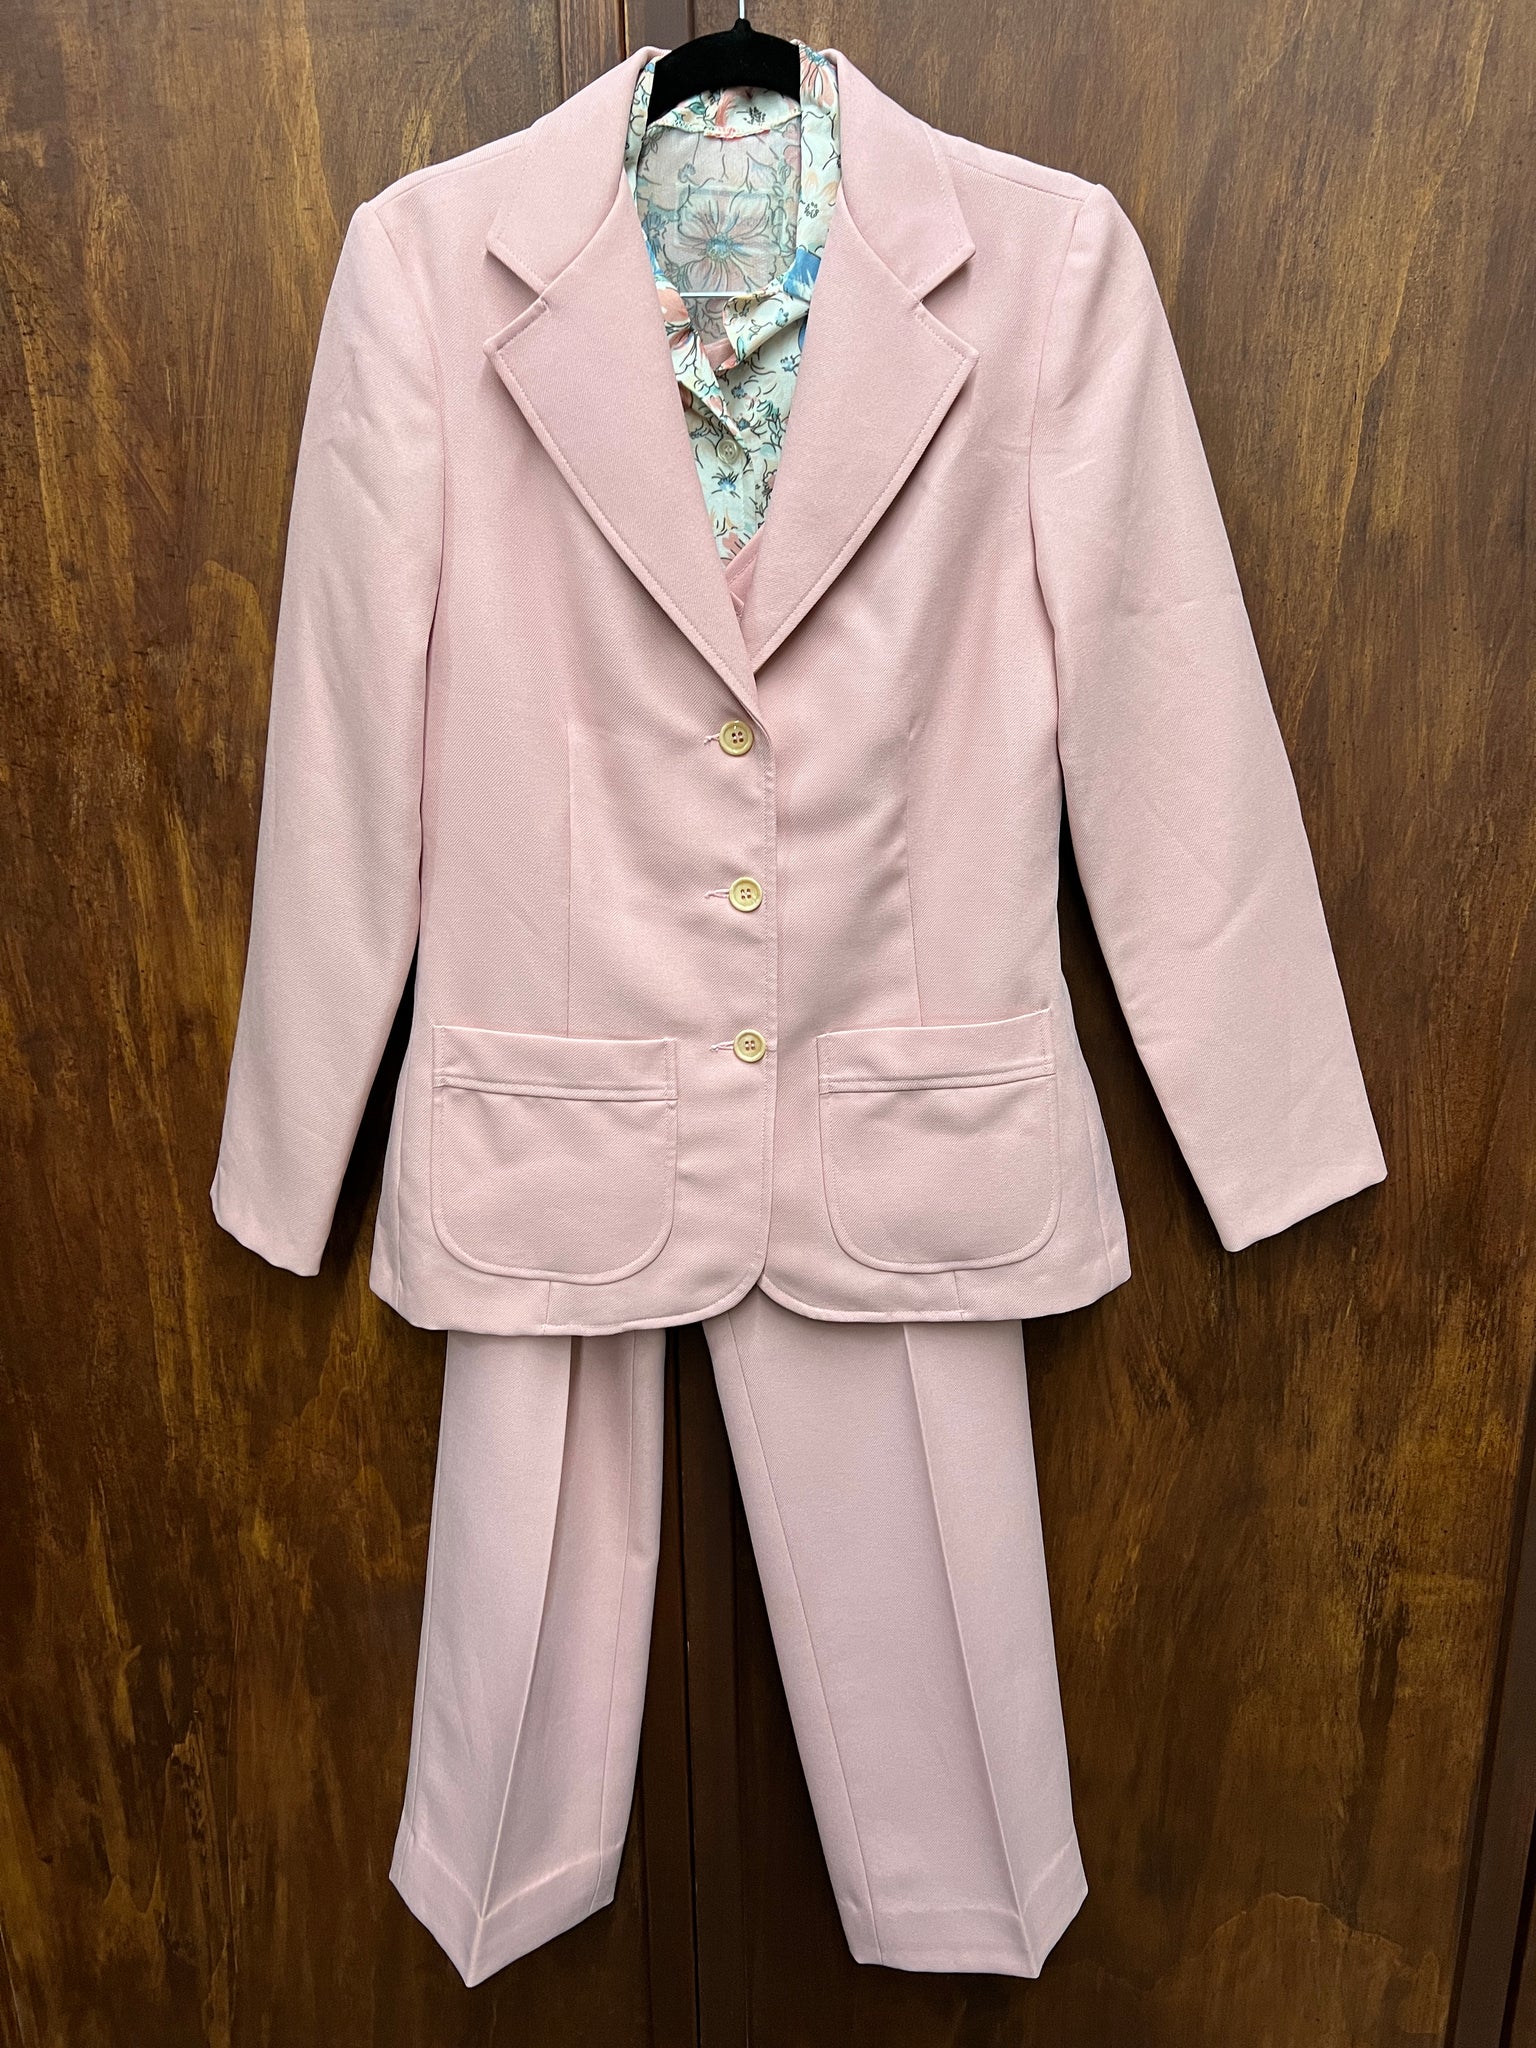 1970s 2PIECE- 4 PIECE PANTSUIT- Pink vest/jacket/ pants w/ printed top